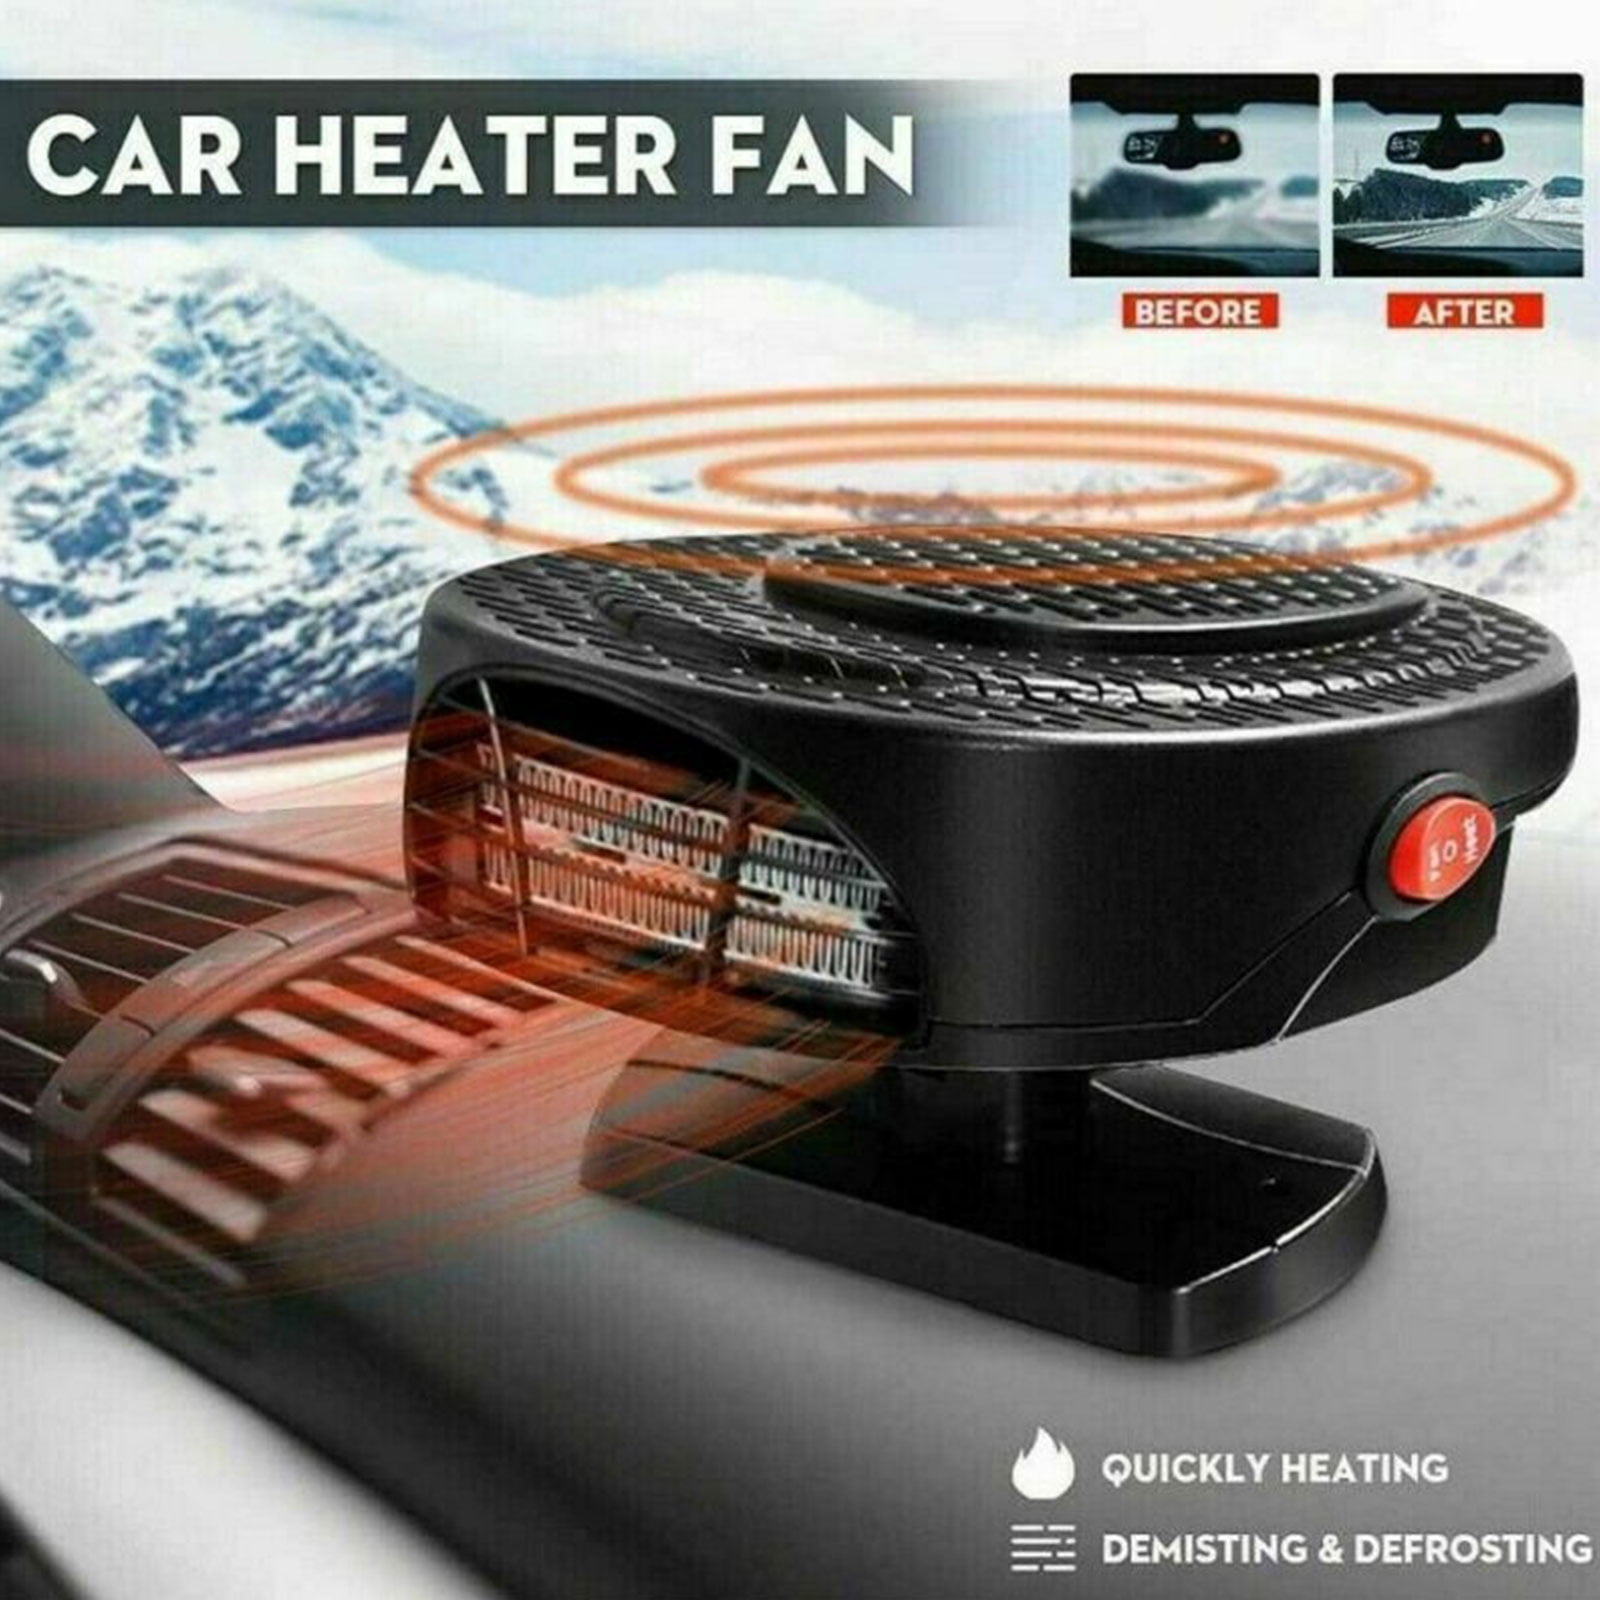 JahyShow 200W 12V Car Truck Auto Heater Hot Cool Fan Windscreen Window  Demister Defroster